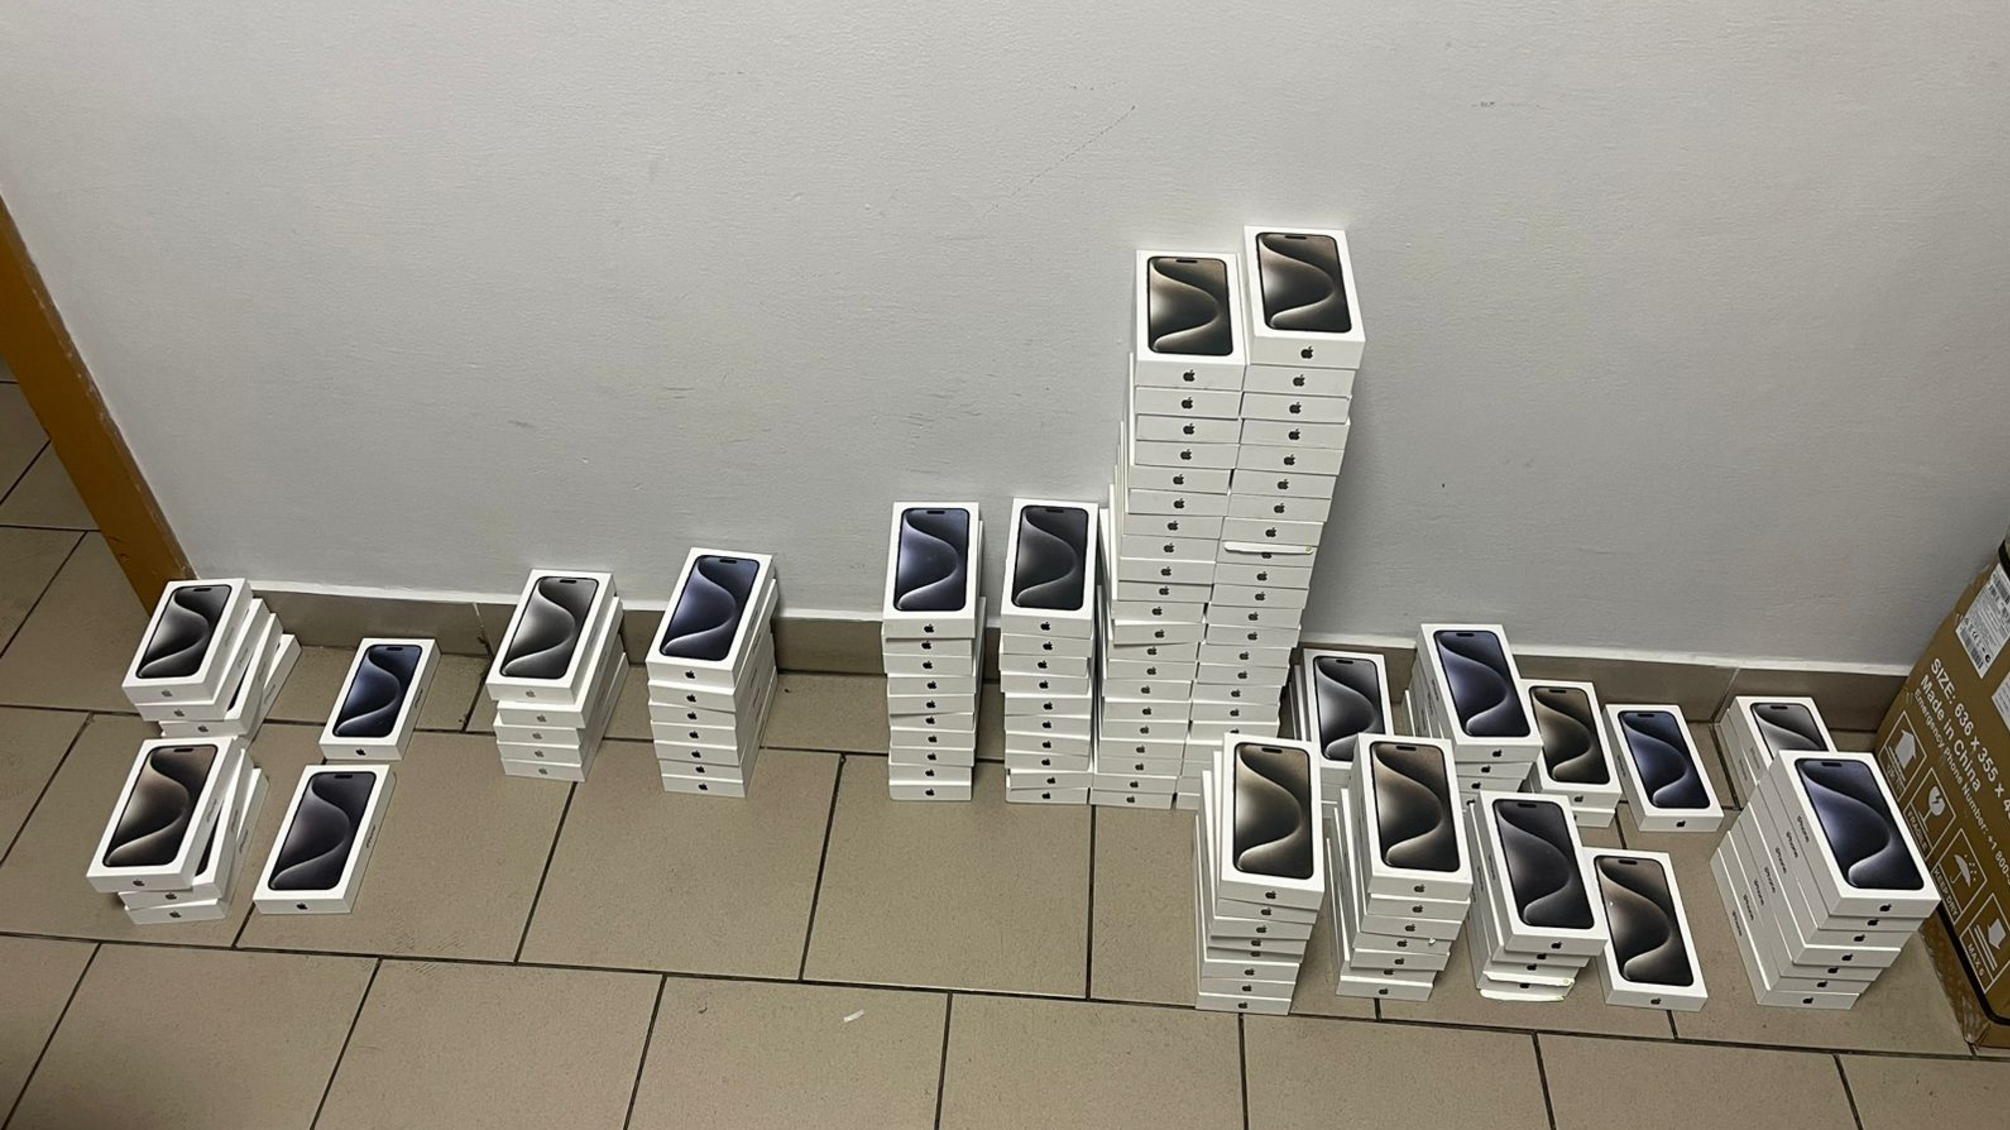 124 iPhone под сиденьем: водитель автобуса стал первым подозреваемым по делу о товарной контрабанде в Украине